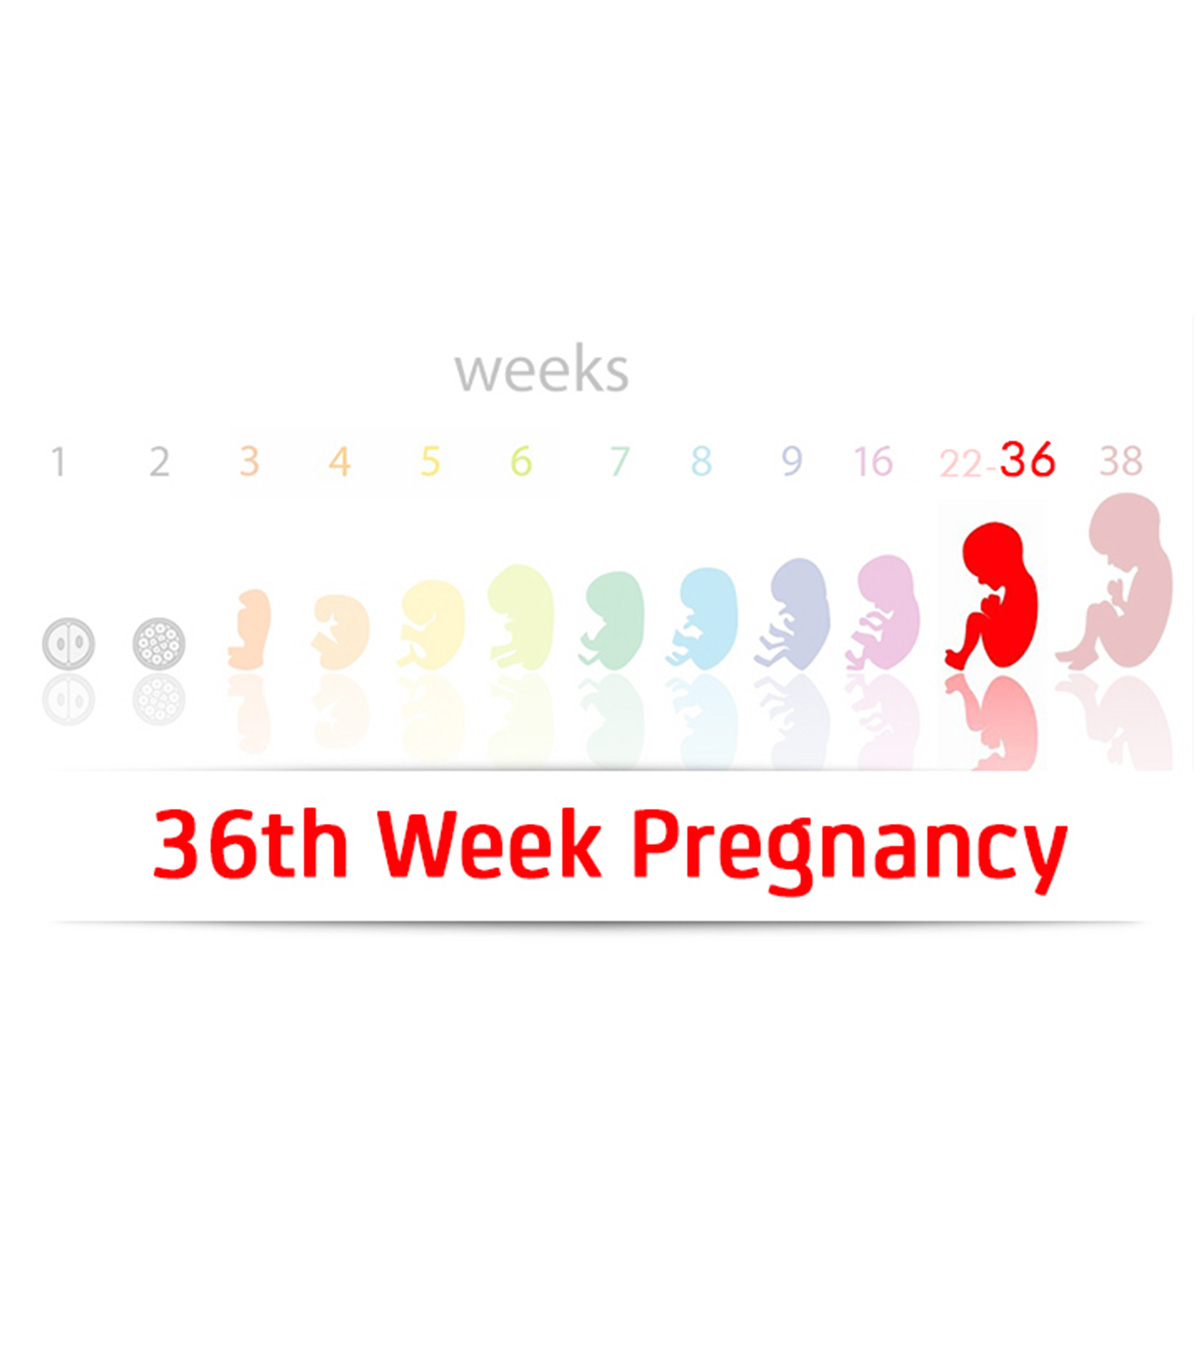 第36周妊娠:症状和婴儿发育